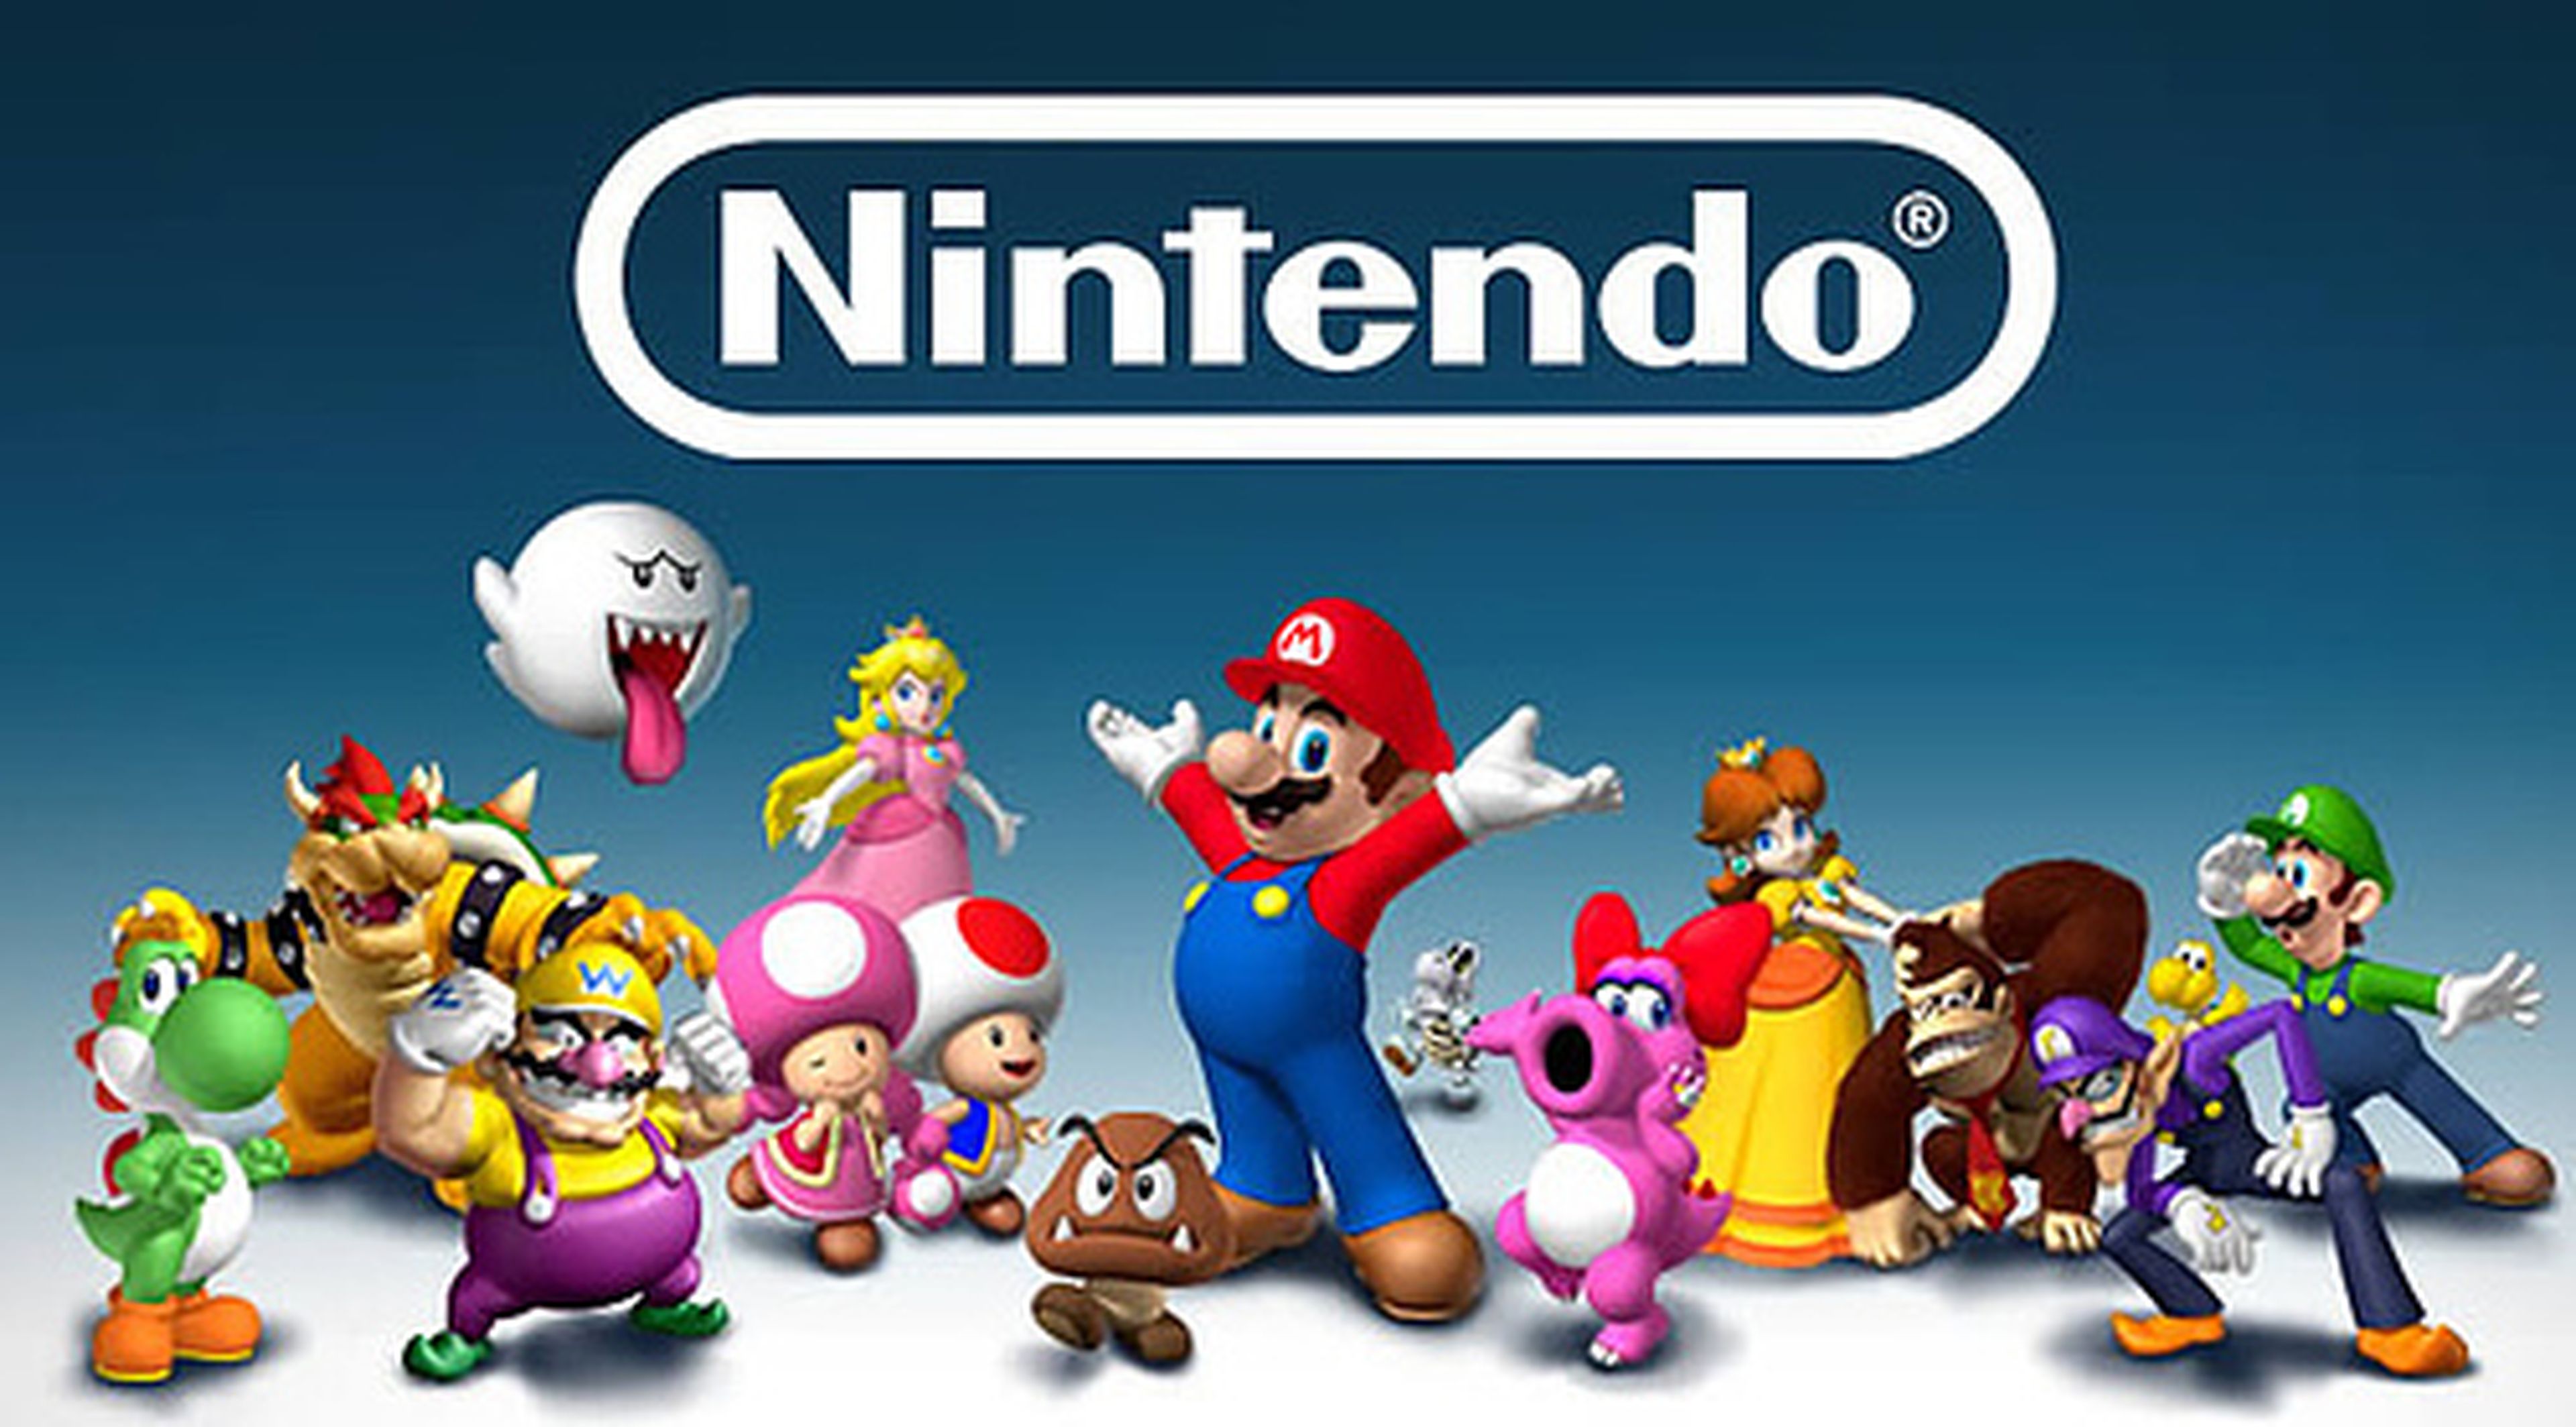 Genyo Takeda favorito para próximo CEO de Nintendo según analistas